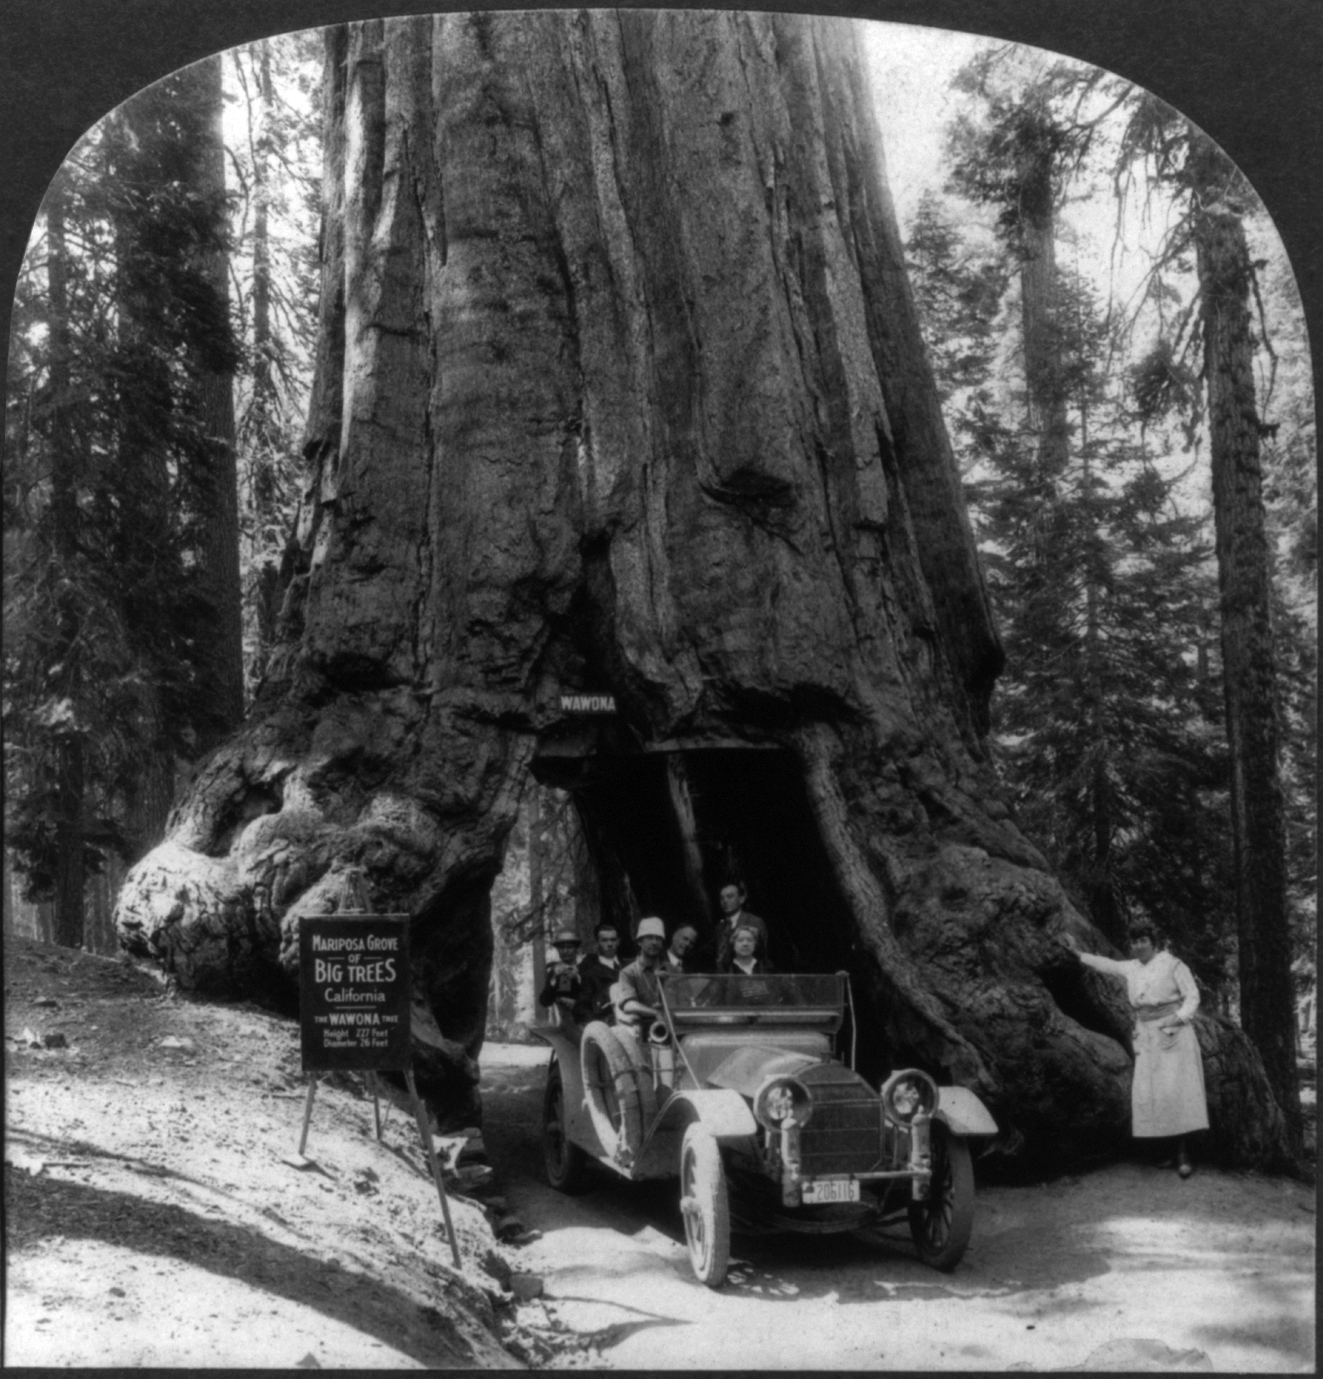 Cartera Sequoia Morral Ctr 